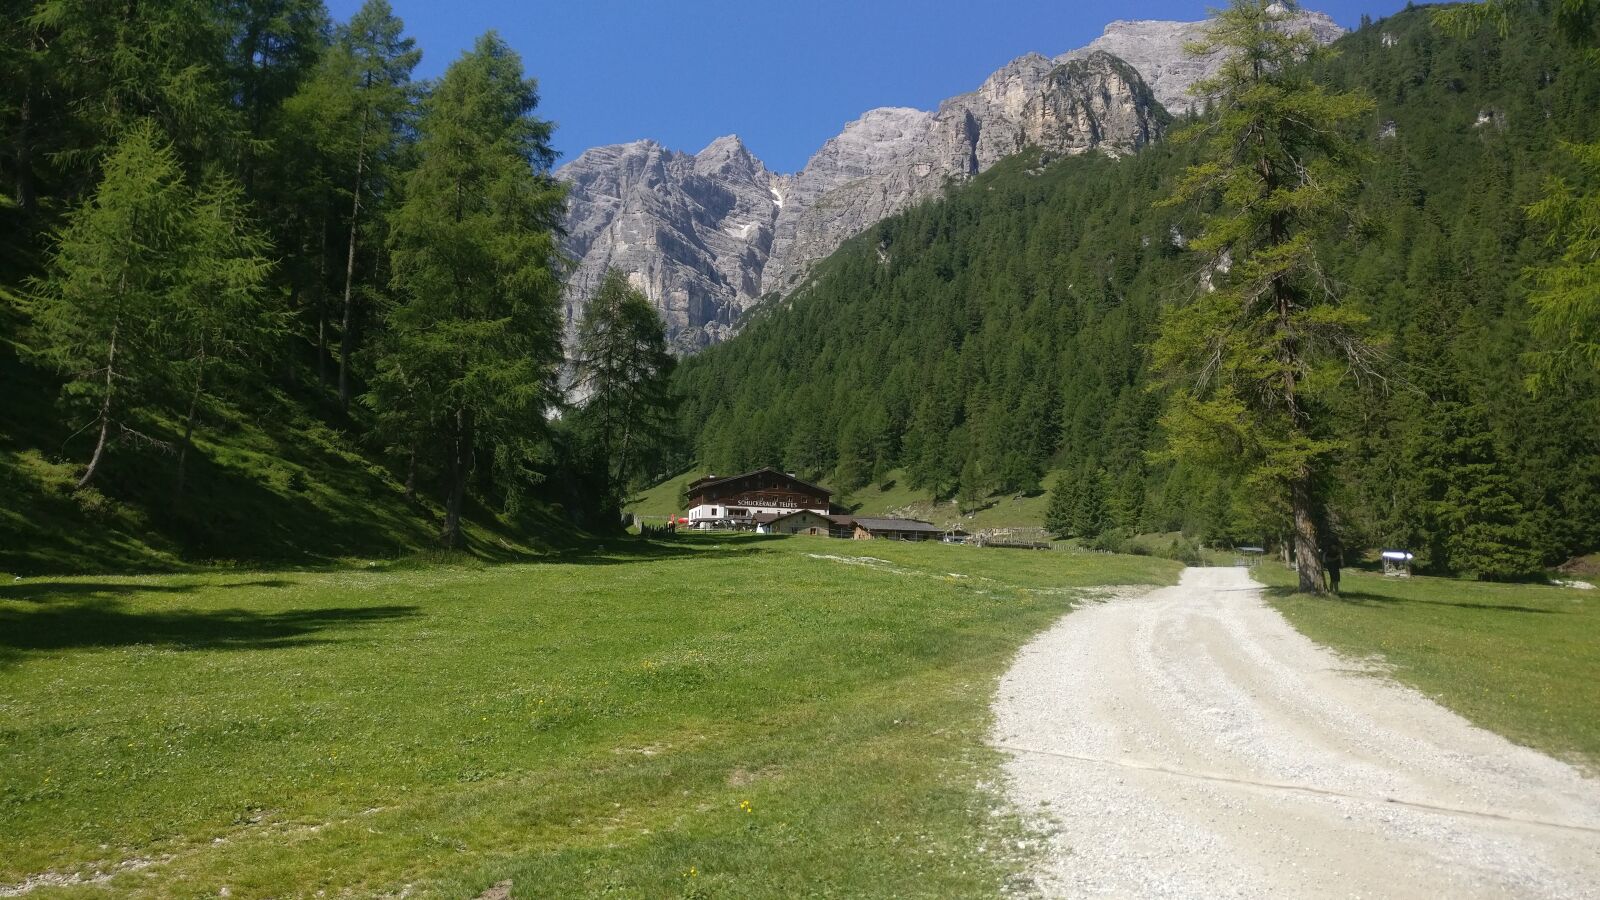 OnePlus A3003 sample photo. Austria, mountains, mountain photography